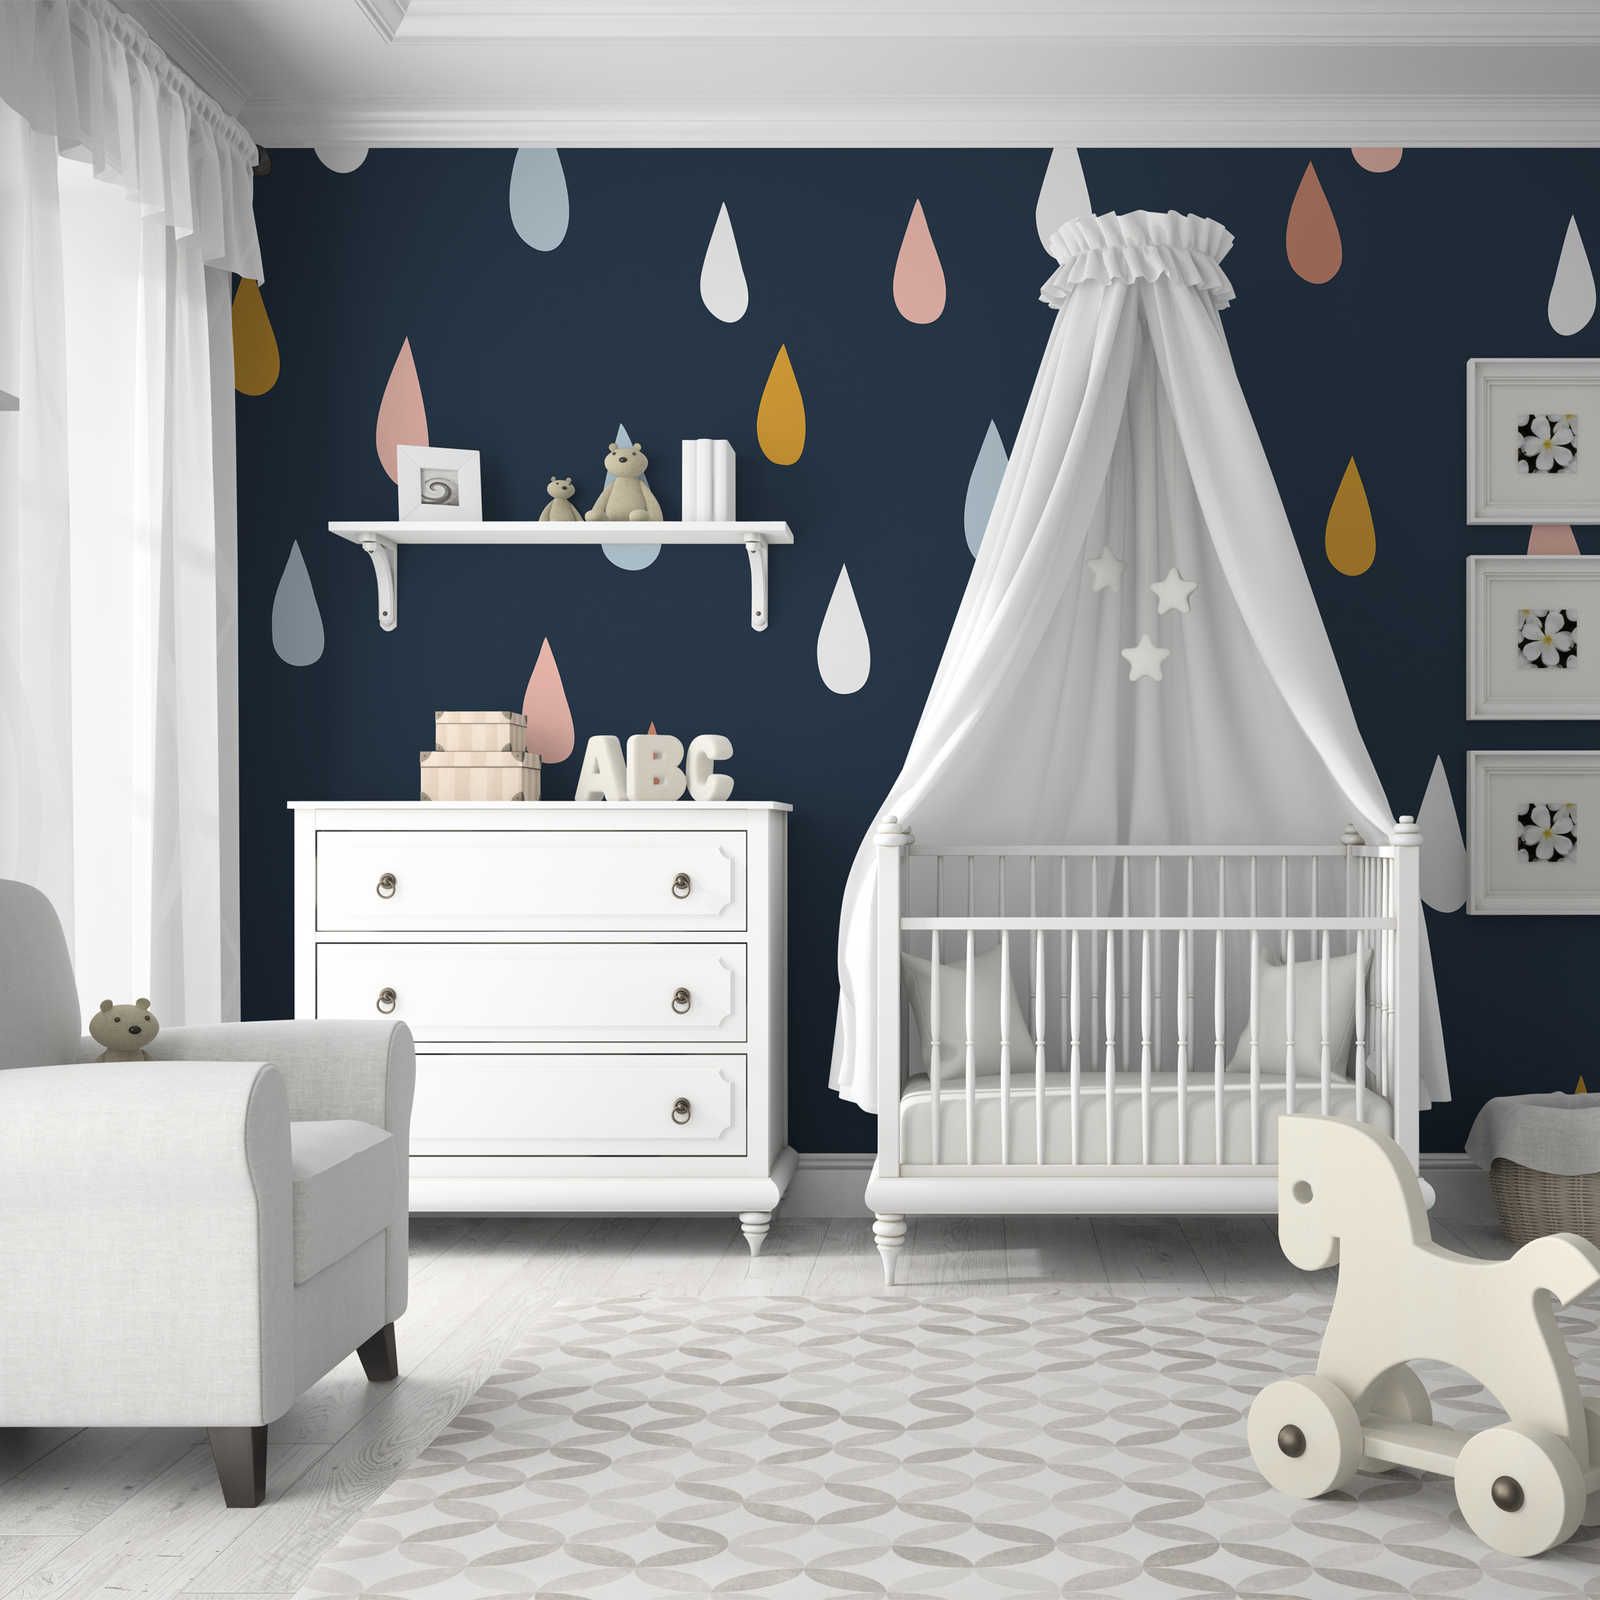         Fototapete fürs Kinderzimmer mit bunten Tropfen – Glattes & leicht glänzendes Vlies
    